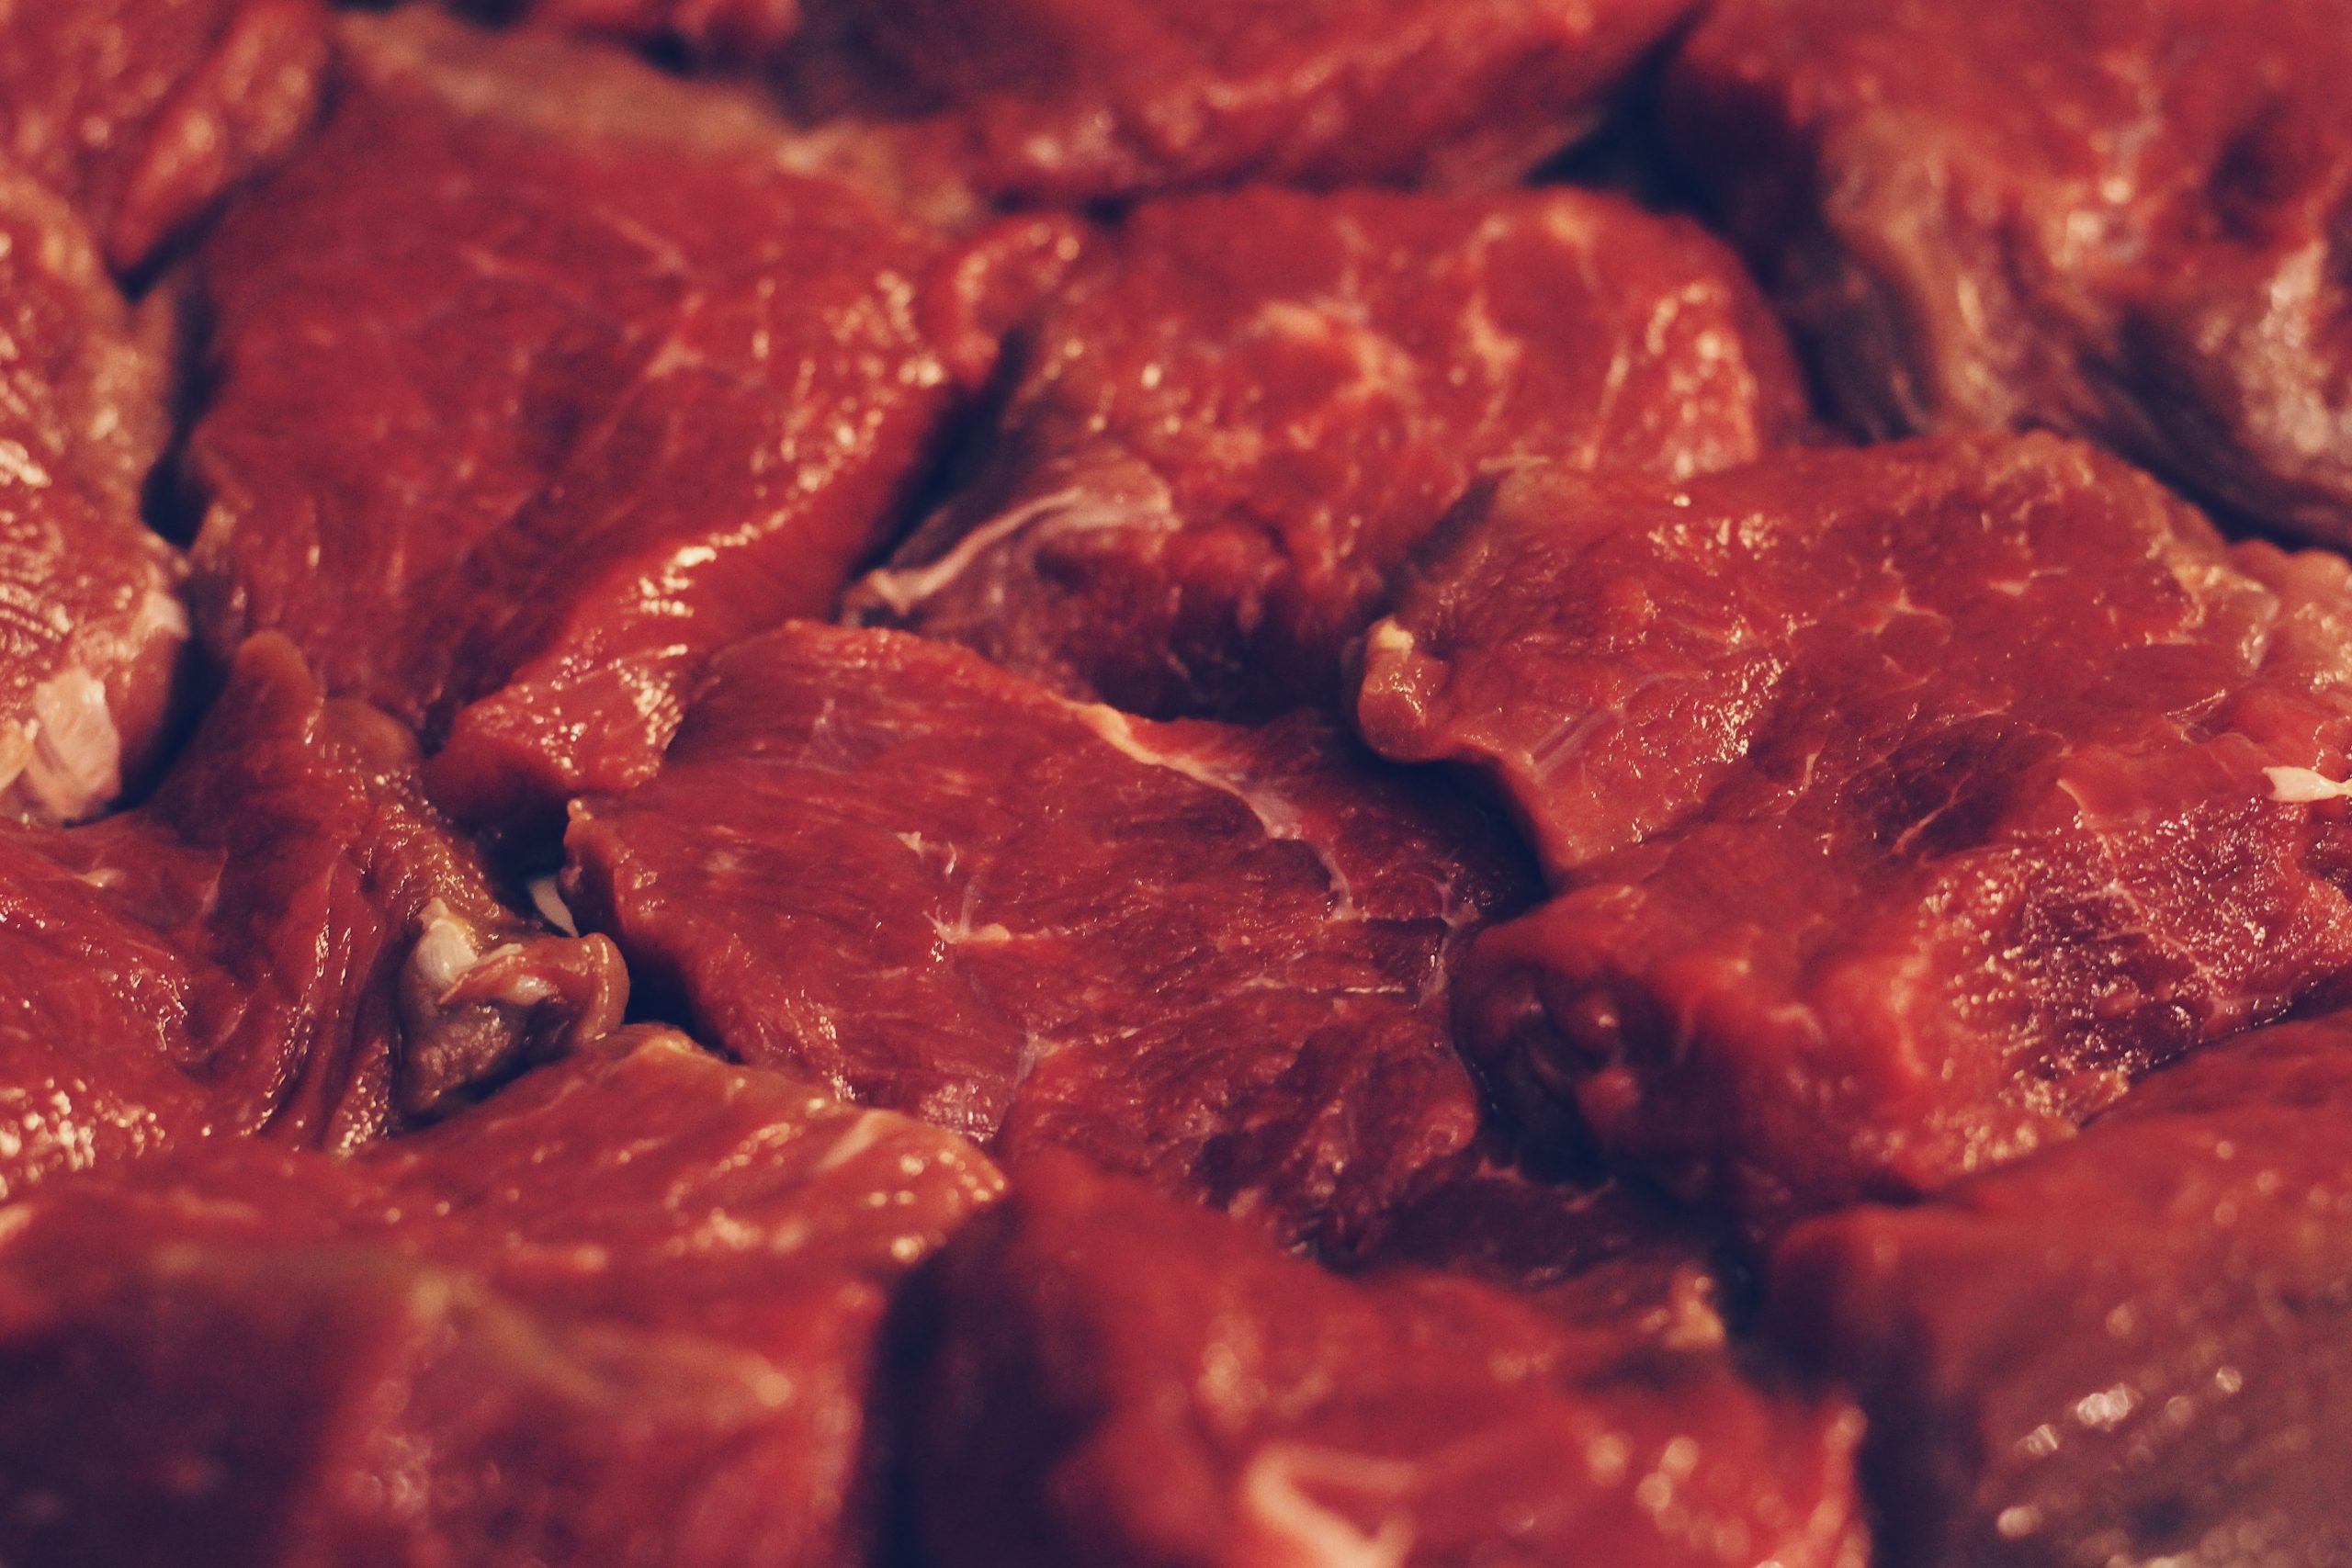 Less meat. Красное мясо фото. Яблоки в красным мясом.